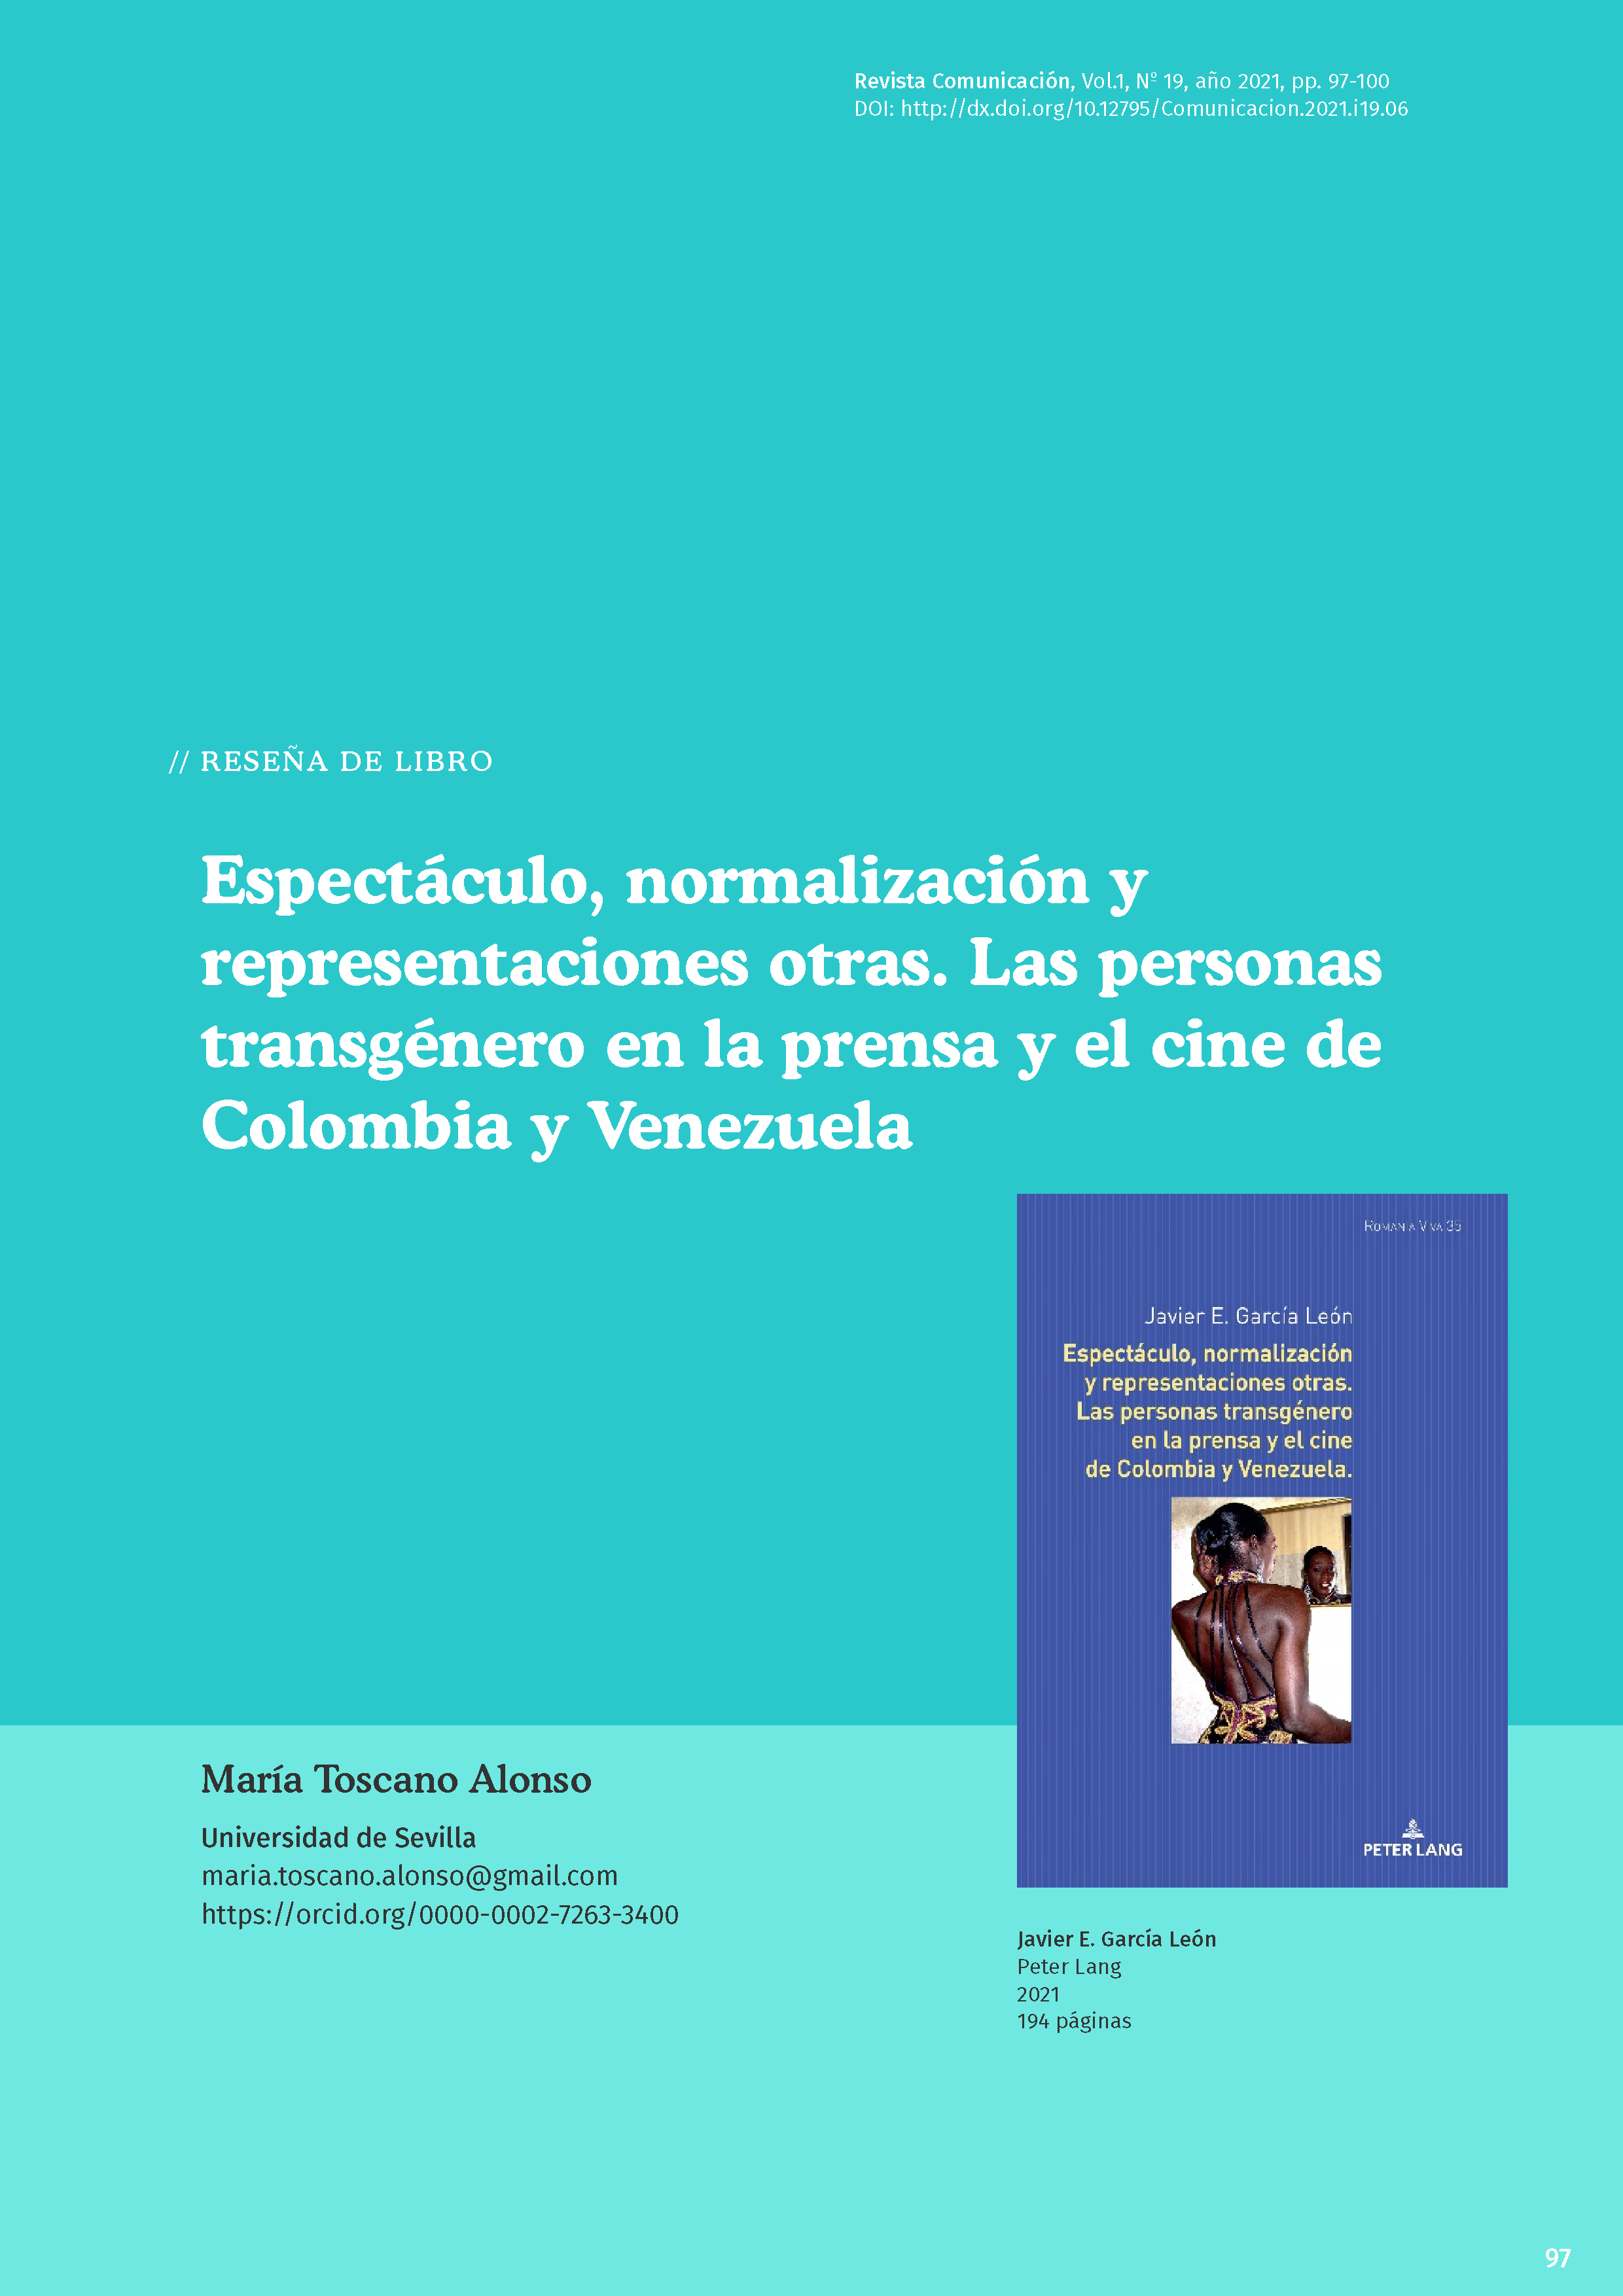 R1.Toscano_Transgenero_Colombia_Venezuela_cover